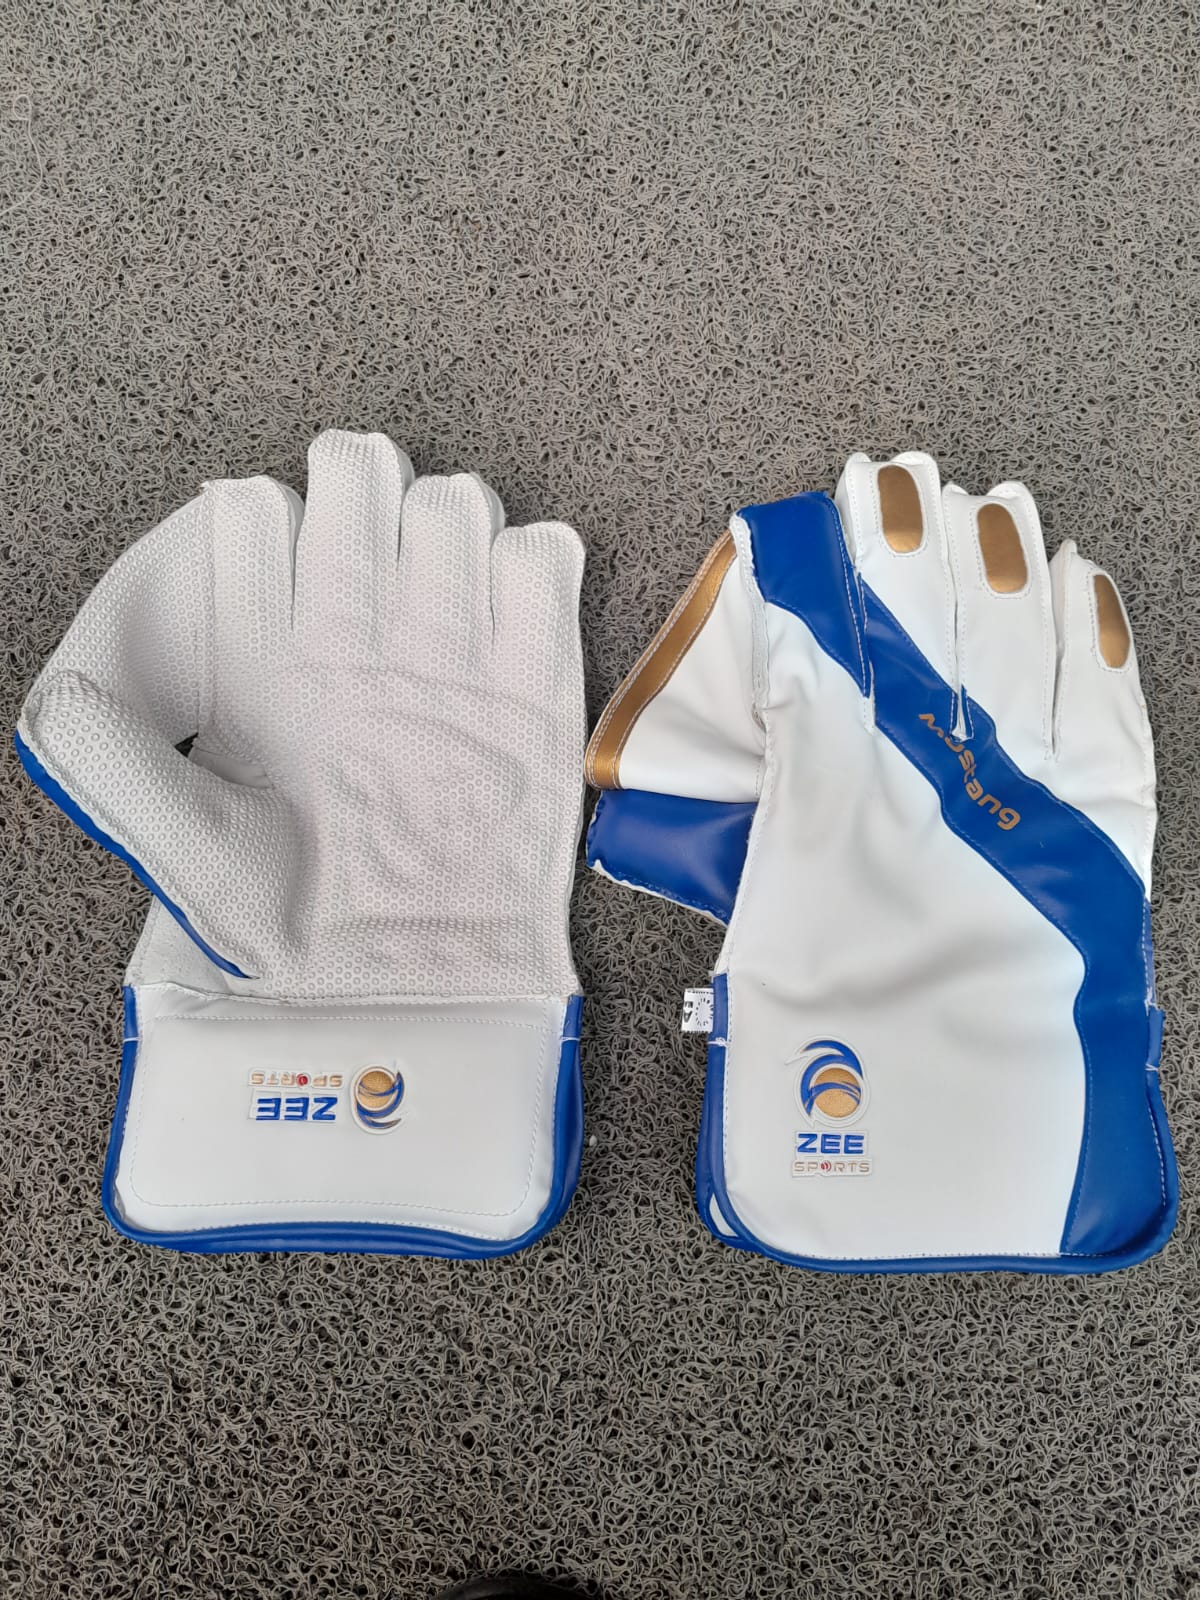 Zee Sports Wicket Keeping Gloves, Model Mustang 3-Star, Adult